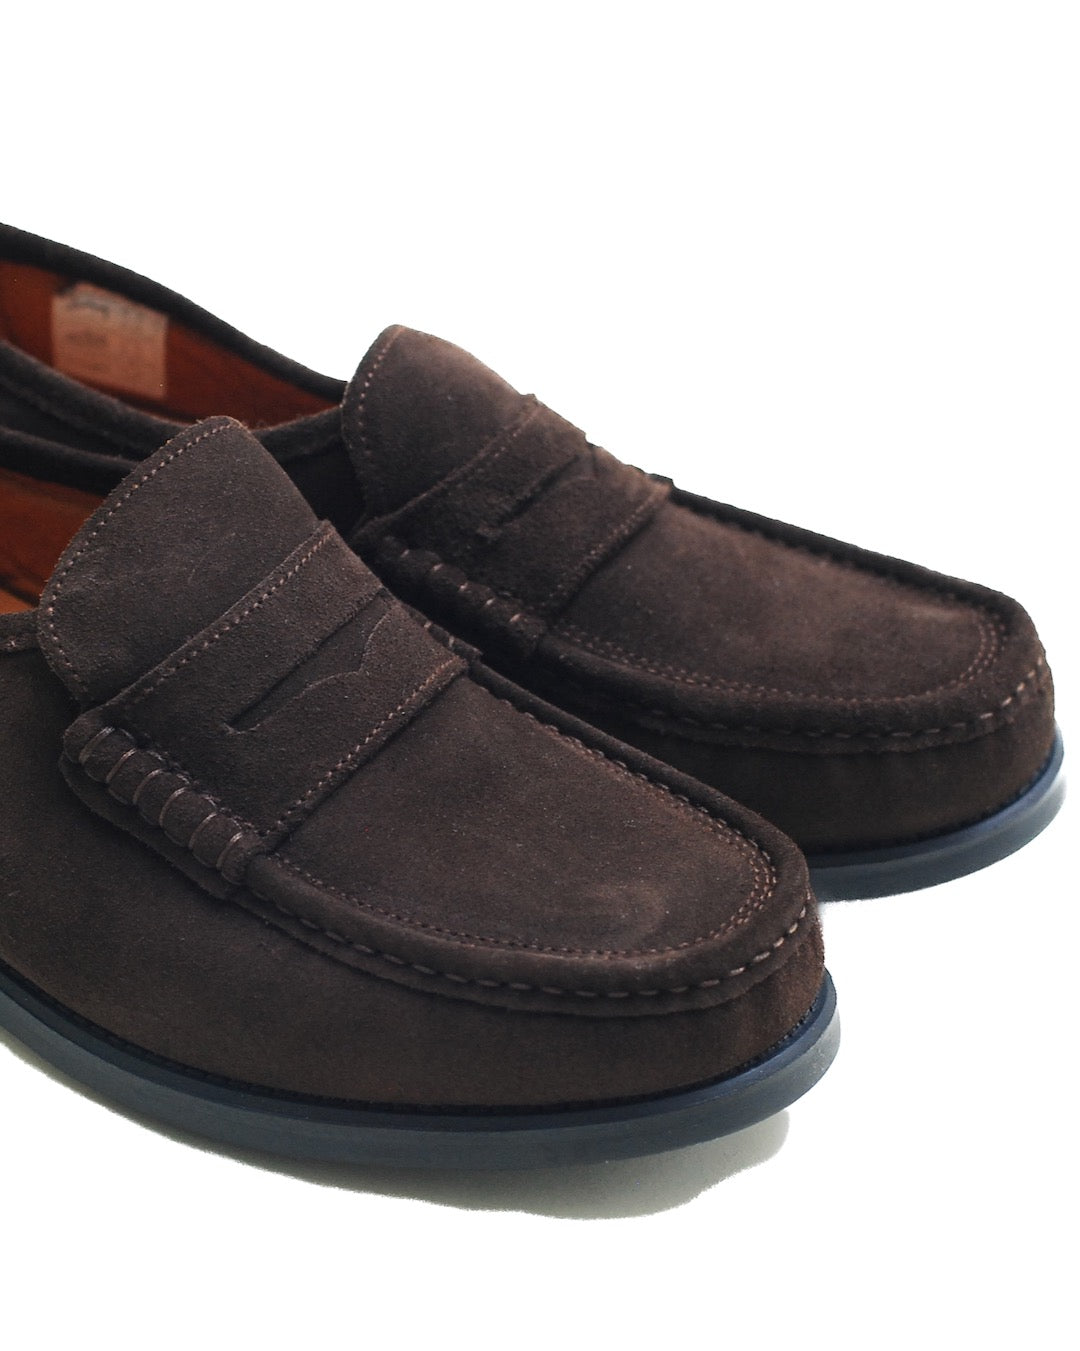 HIMALAYA LOAFER / SUEDE MARRON靴